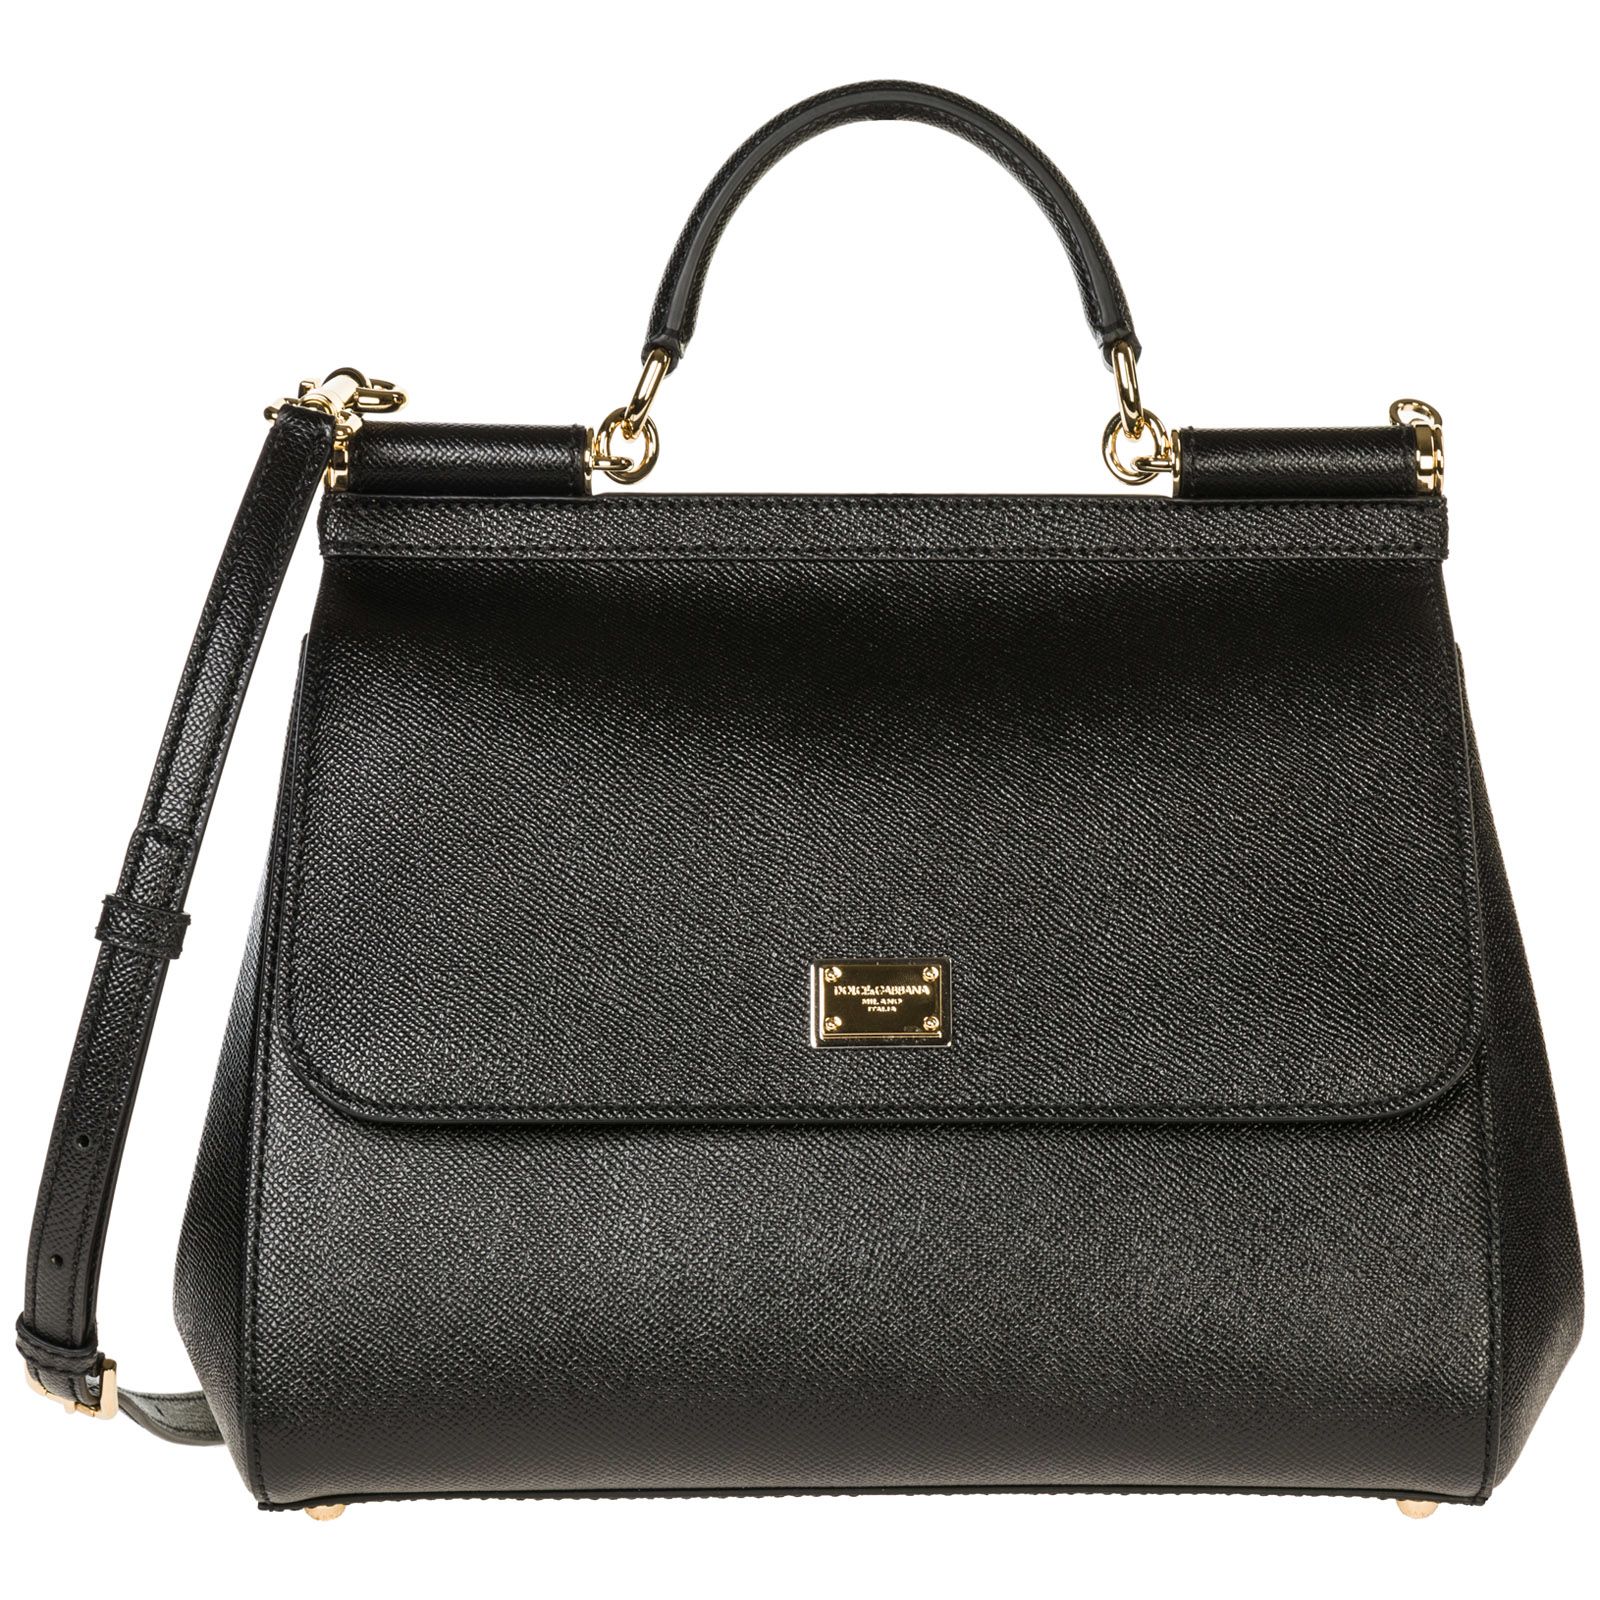 Dolce & Gabbana Dolce & Gabbana Leather Handbag Shopping Bag Purse ...